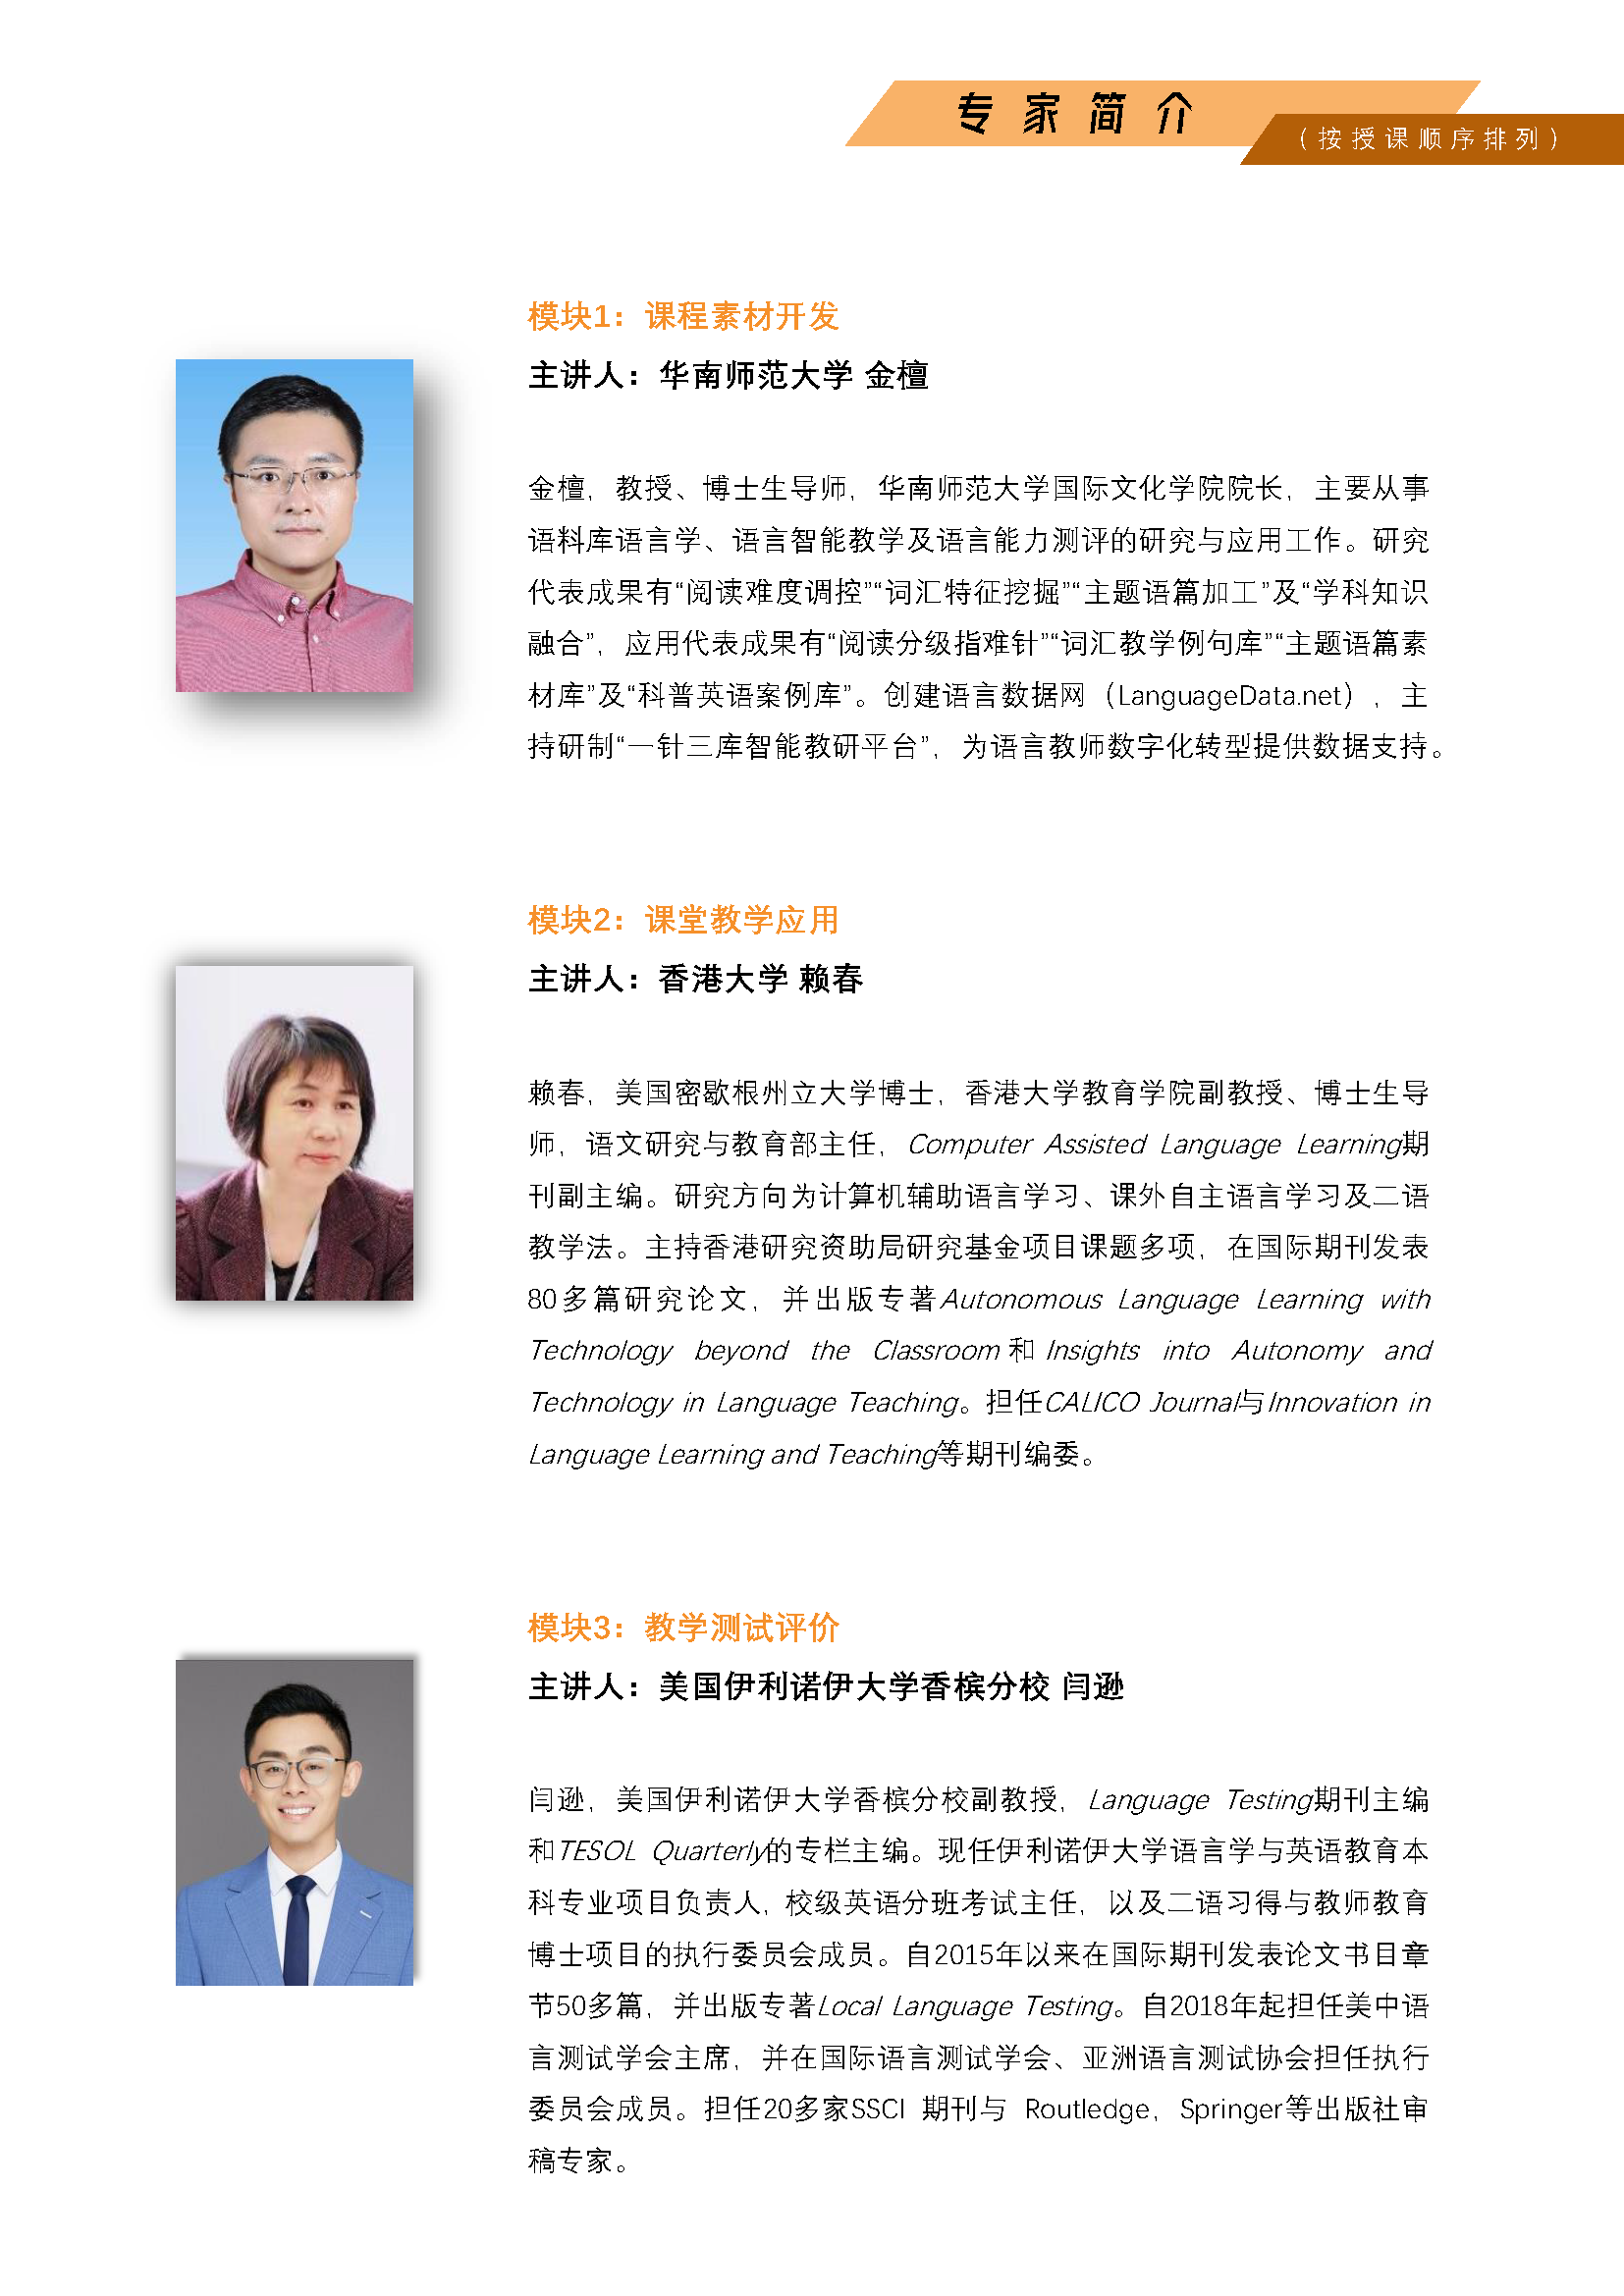 广州举办--面向AIGC的智慧教研能力提升系列研修班第一期_页面_4.png